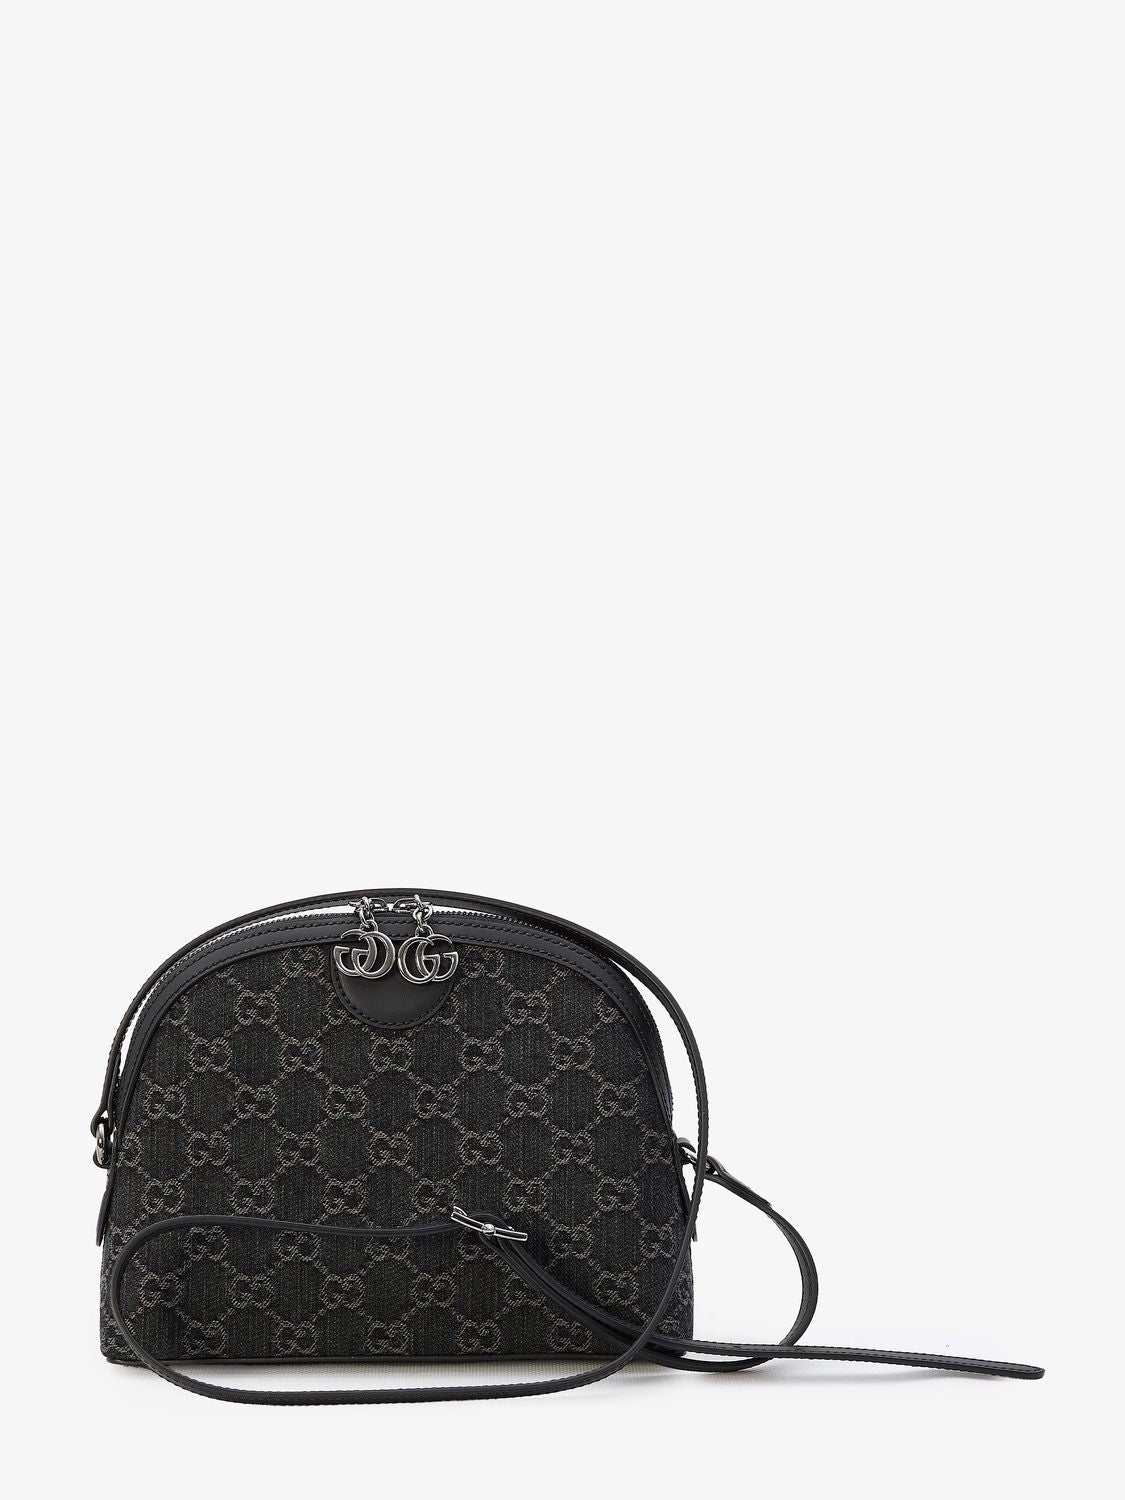 GUCCI Black Ophidia GG Shoulder Handbag for Women